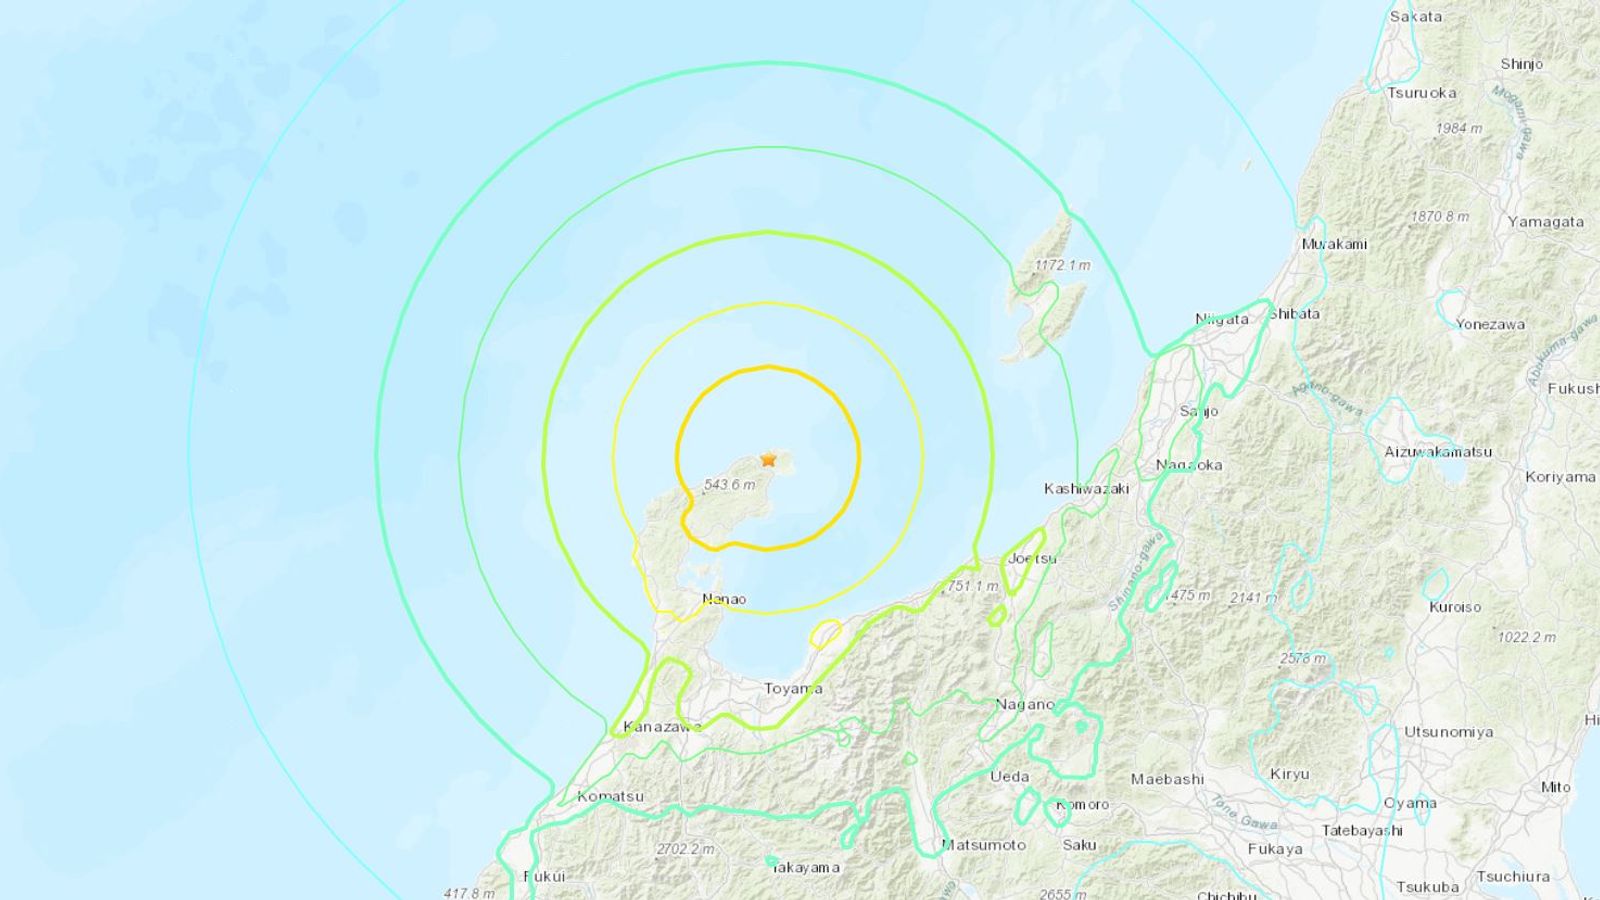 Tsunami warning issued as 7.6 magnitude earthquake hits Japan | World News